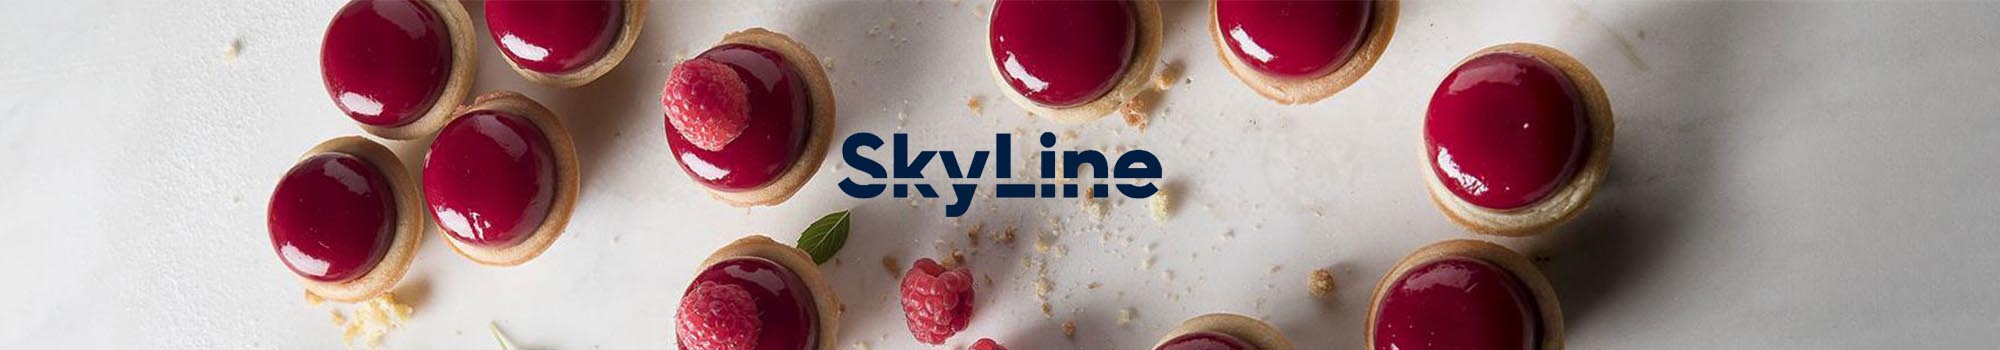 skyline-combi-oven-pastry-banner-2000x350